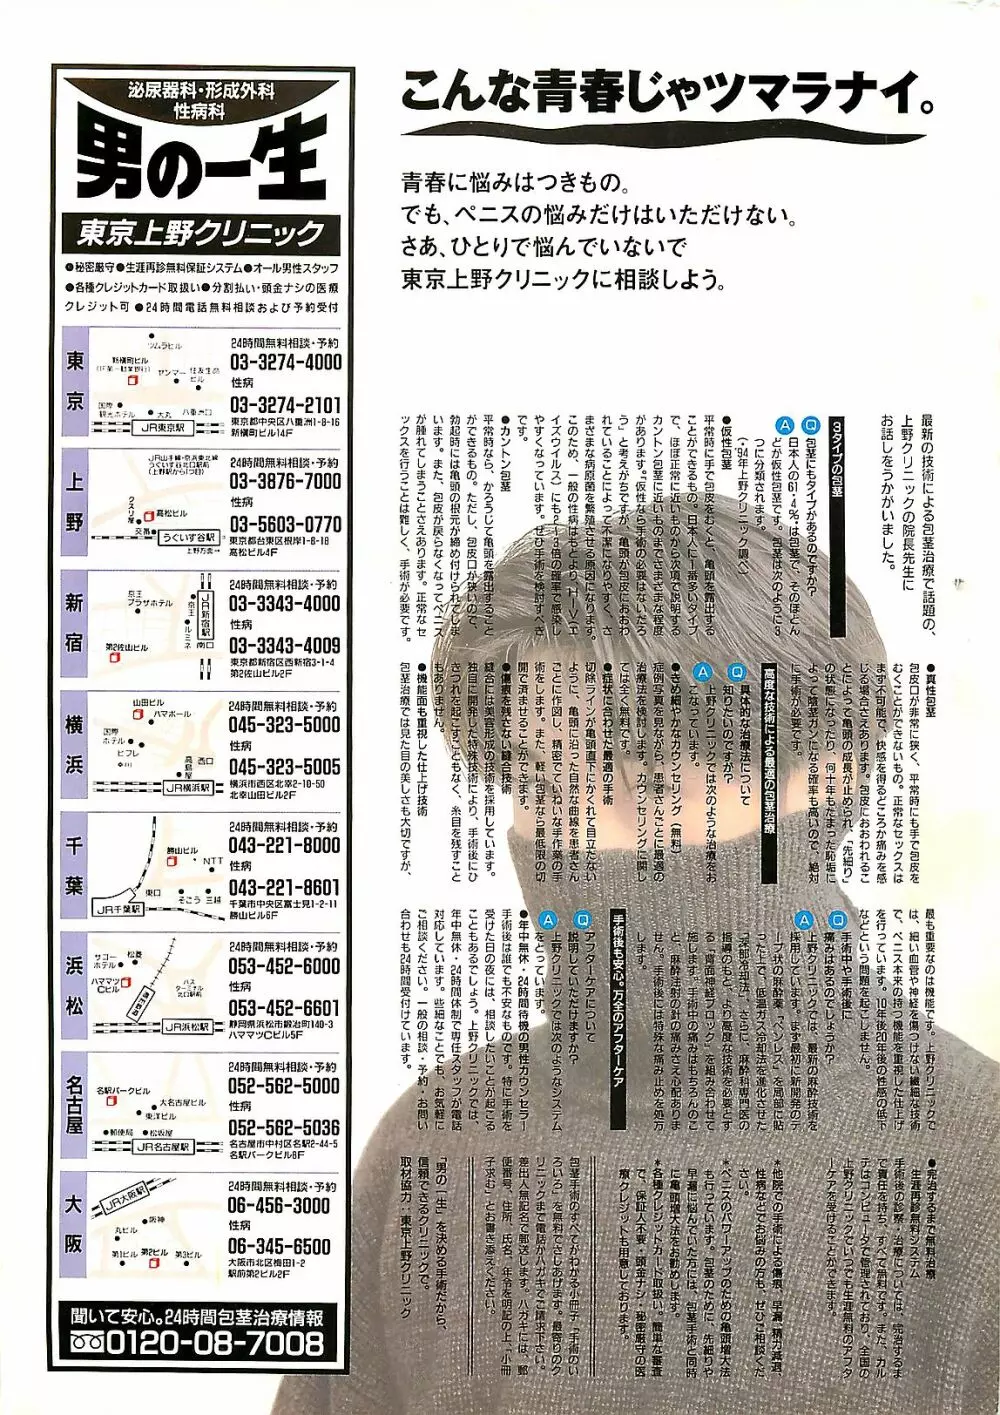 COMIC ゆみちゃん No.2 1995年08月号 255ページ